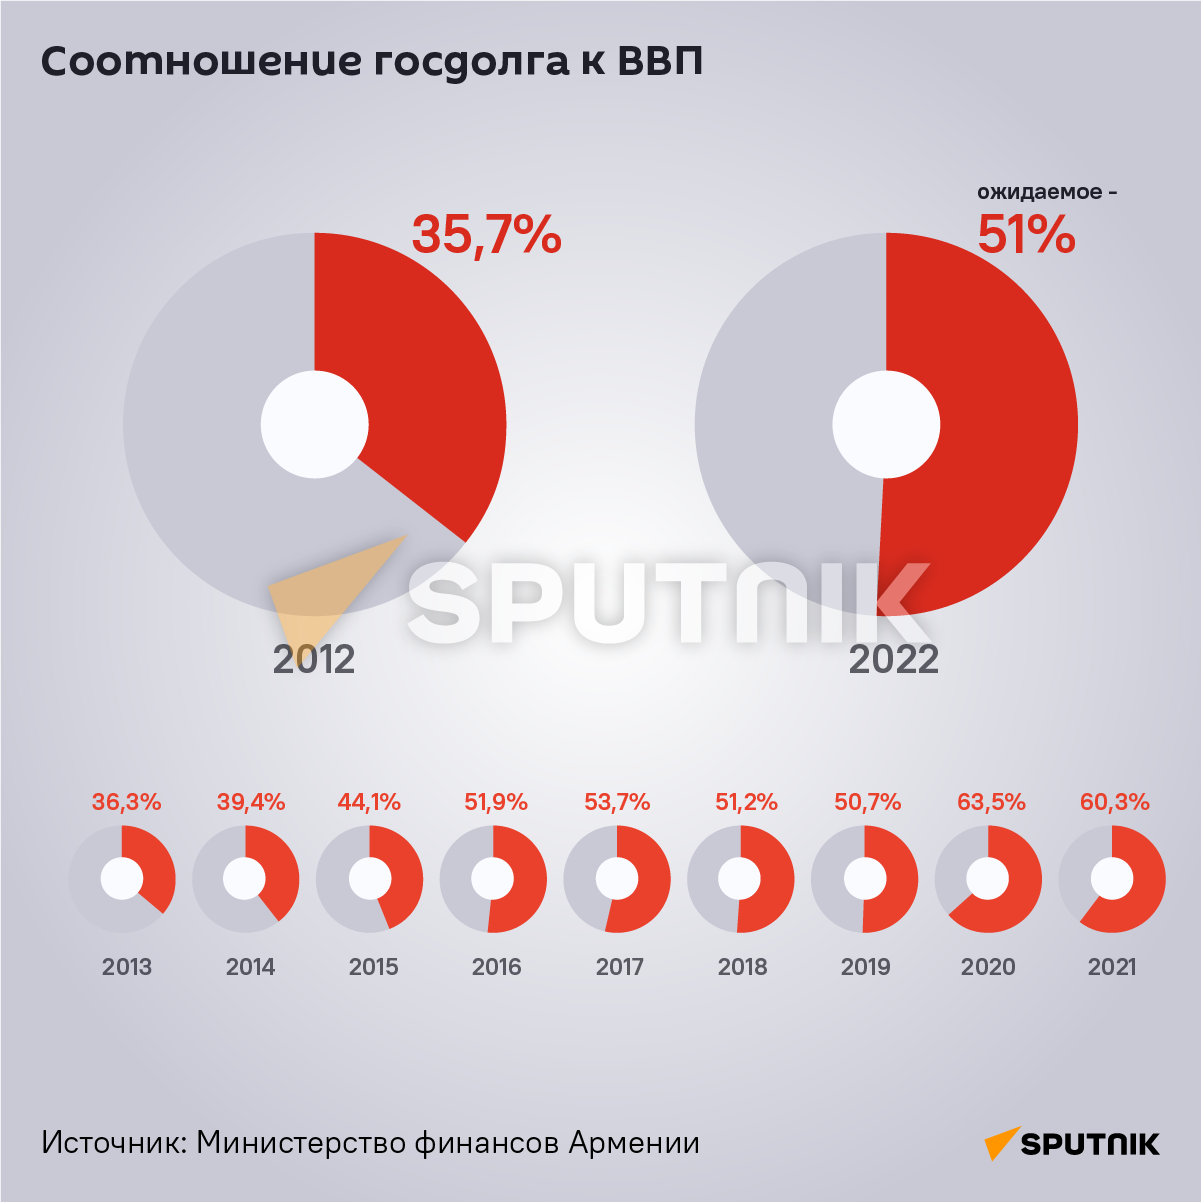 Как изменился госдолг Армении в 2012-22 годах - Sputnik Армения